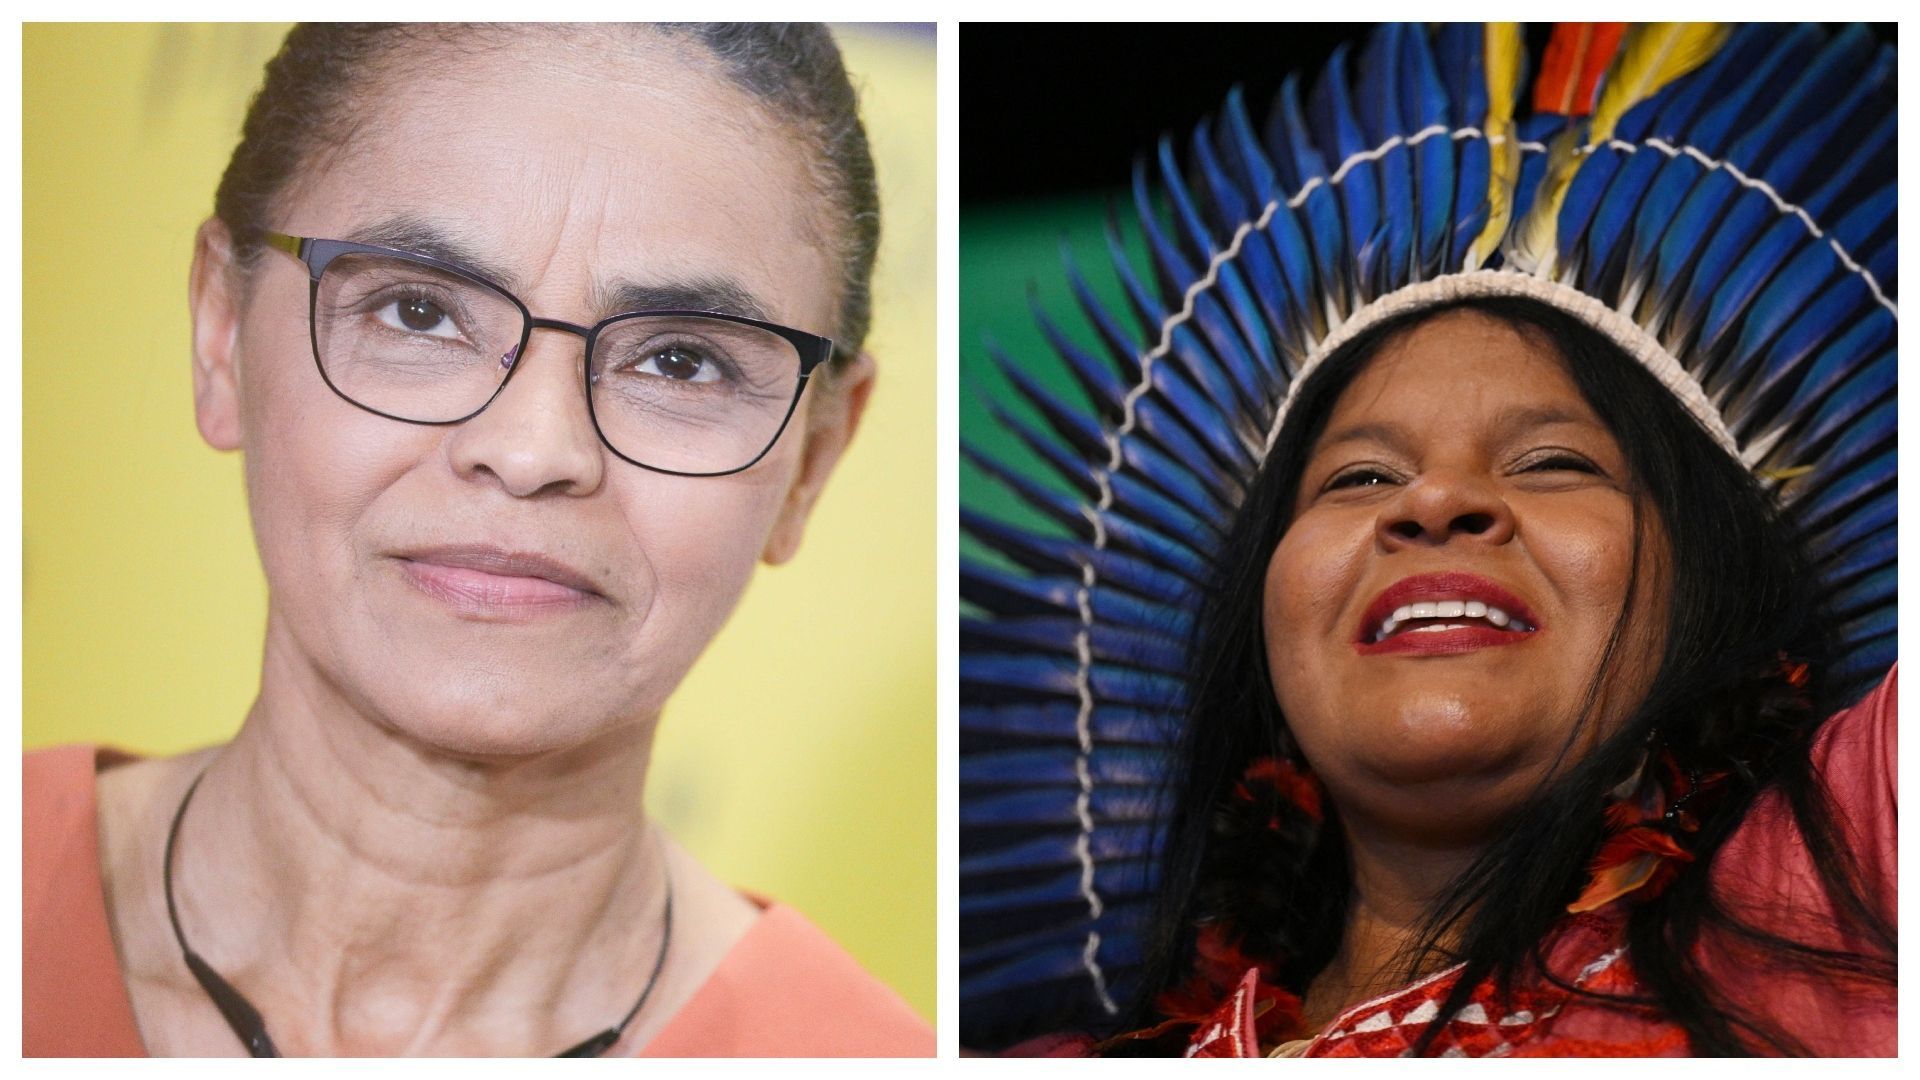 A gauche, Marina Silva, nouvelle Ministre de l’Environnement. A droite, la leader autochtone Sonia Guajajara, nouvelle Ministre des peuples indigènes. 